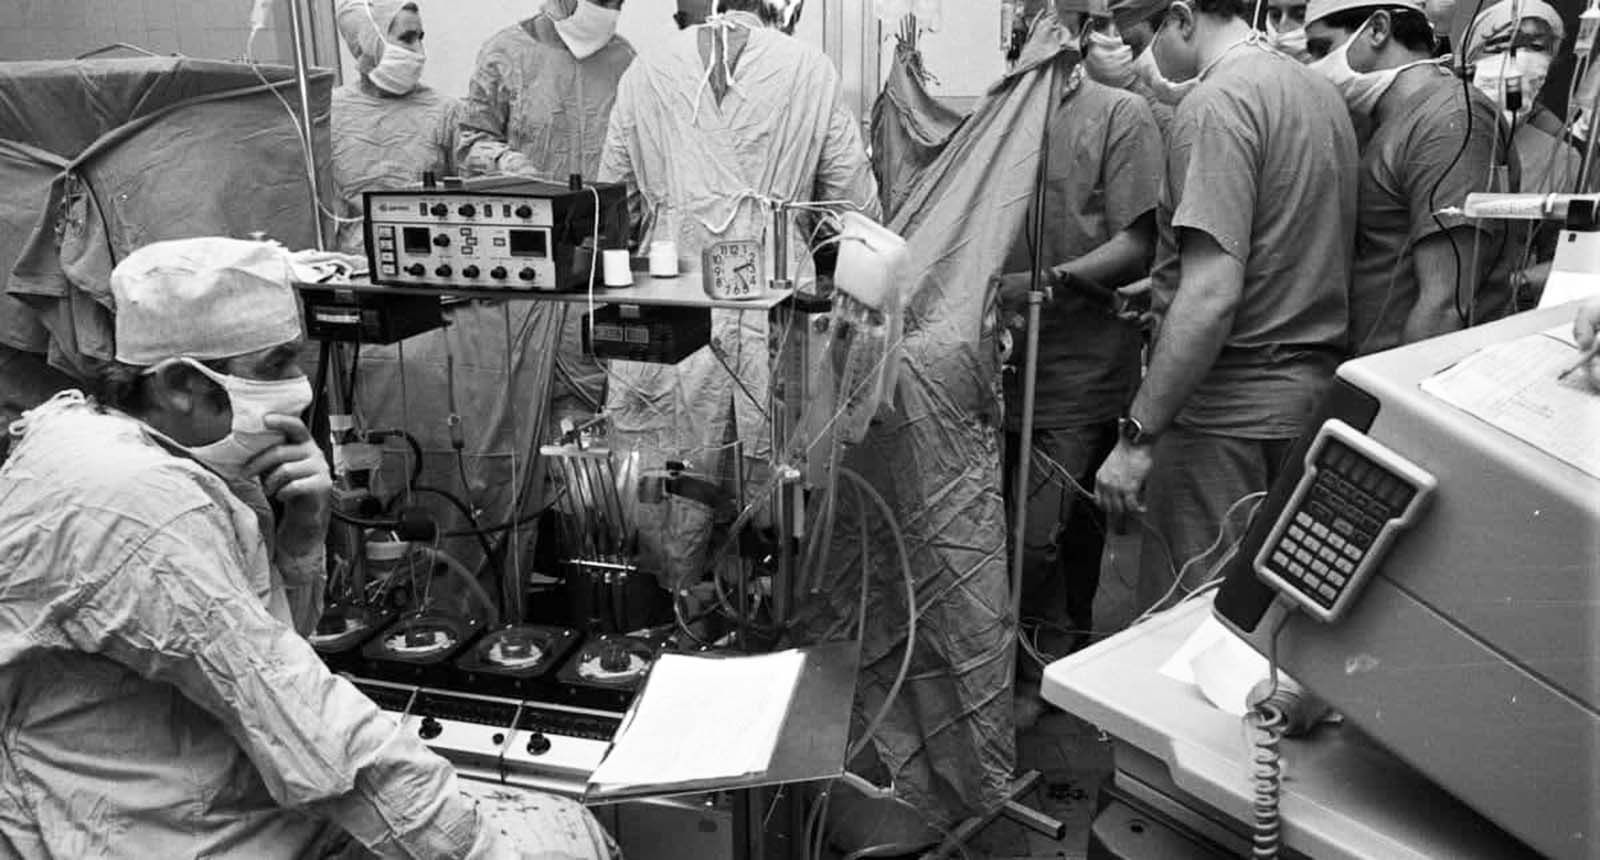 Le Dr Zbigniew Religa surveille les signes vitaux de son patient après une transplantation cardiaque de 23 heures, 1987